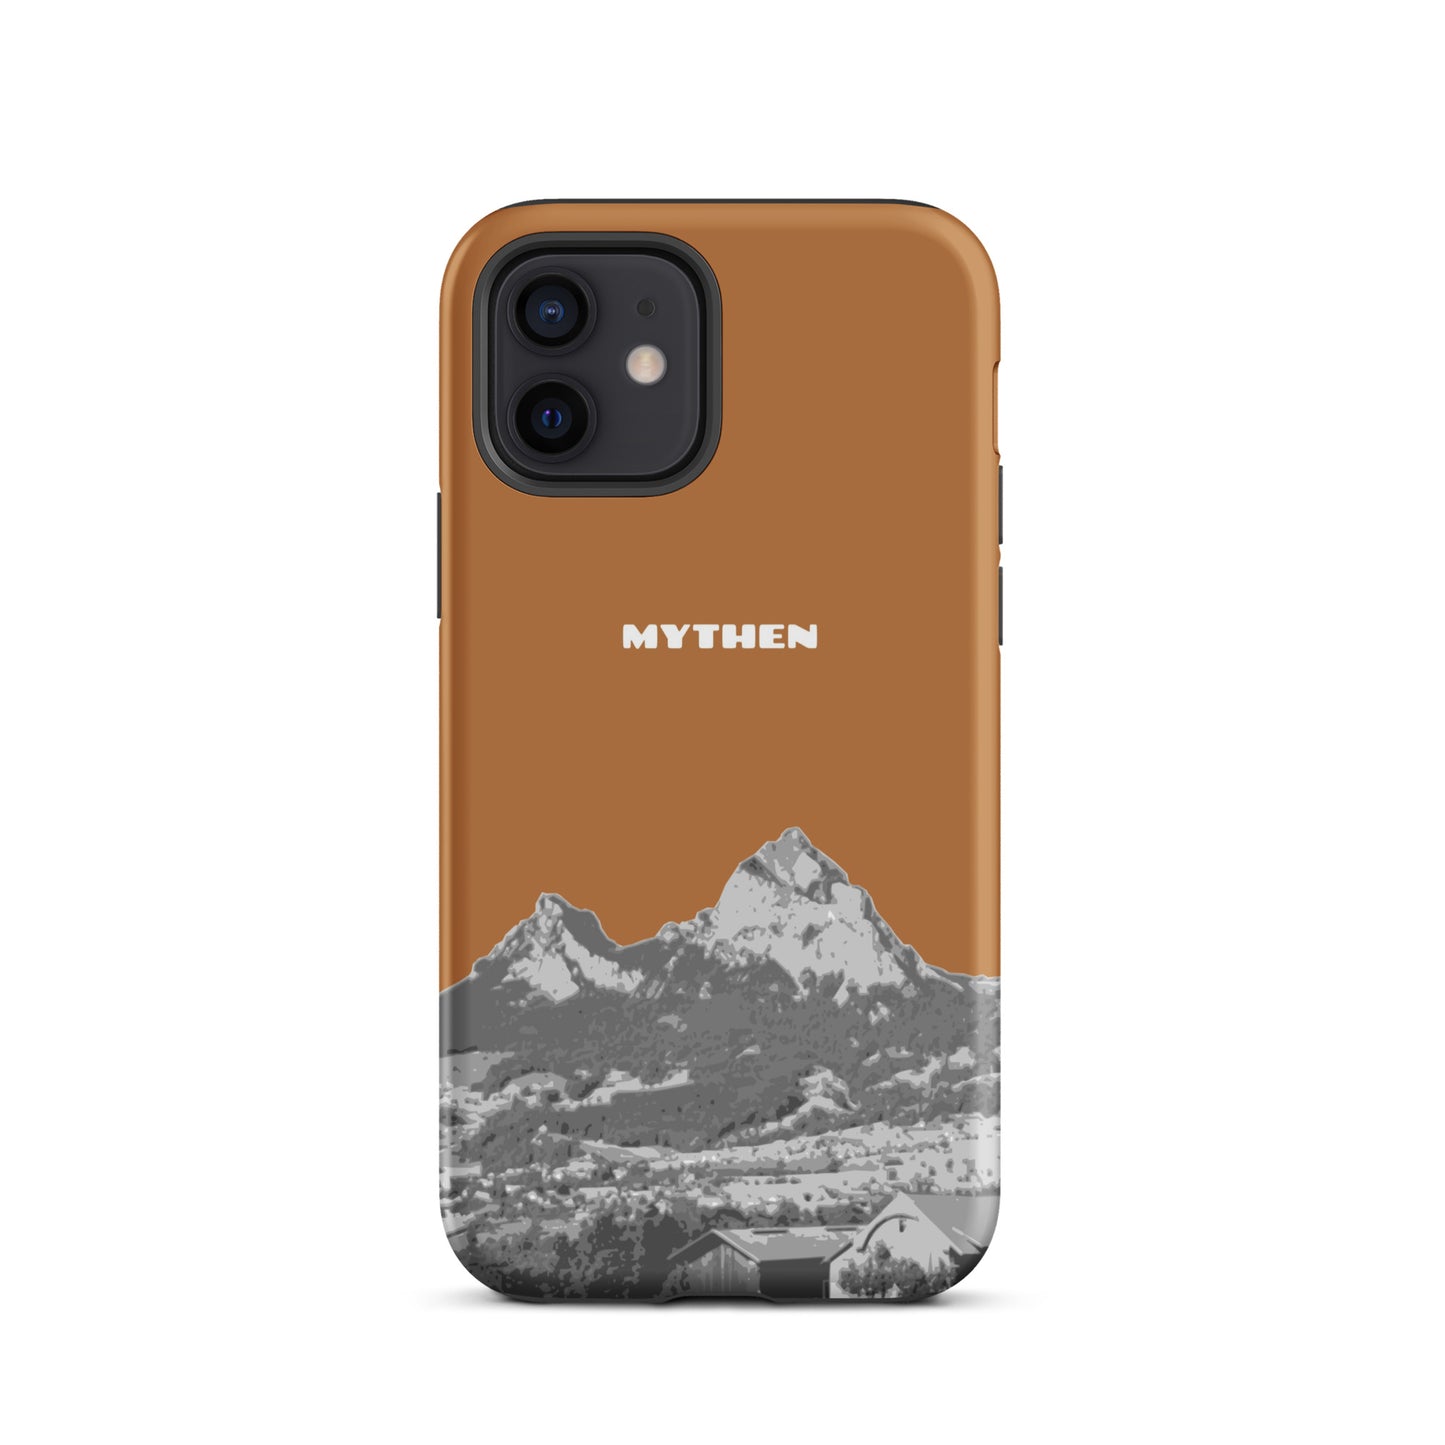 Hülle für das iPhone 12 von Apple in der Farbe Kupfer, dass den Grossen Mythen und den Kleinen Mythen bei Schwyz zeigt. 